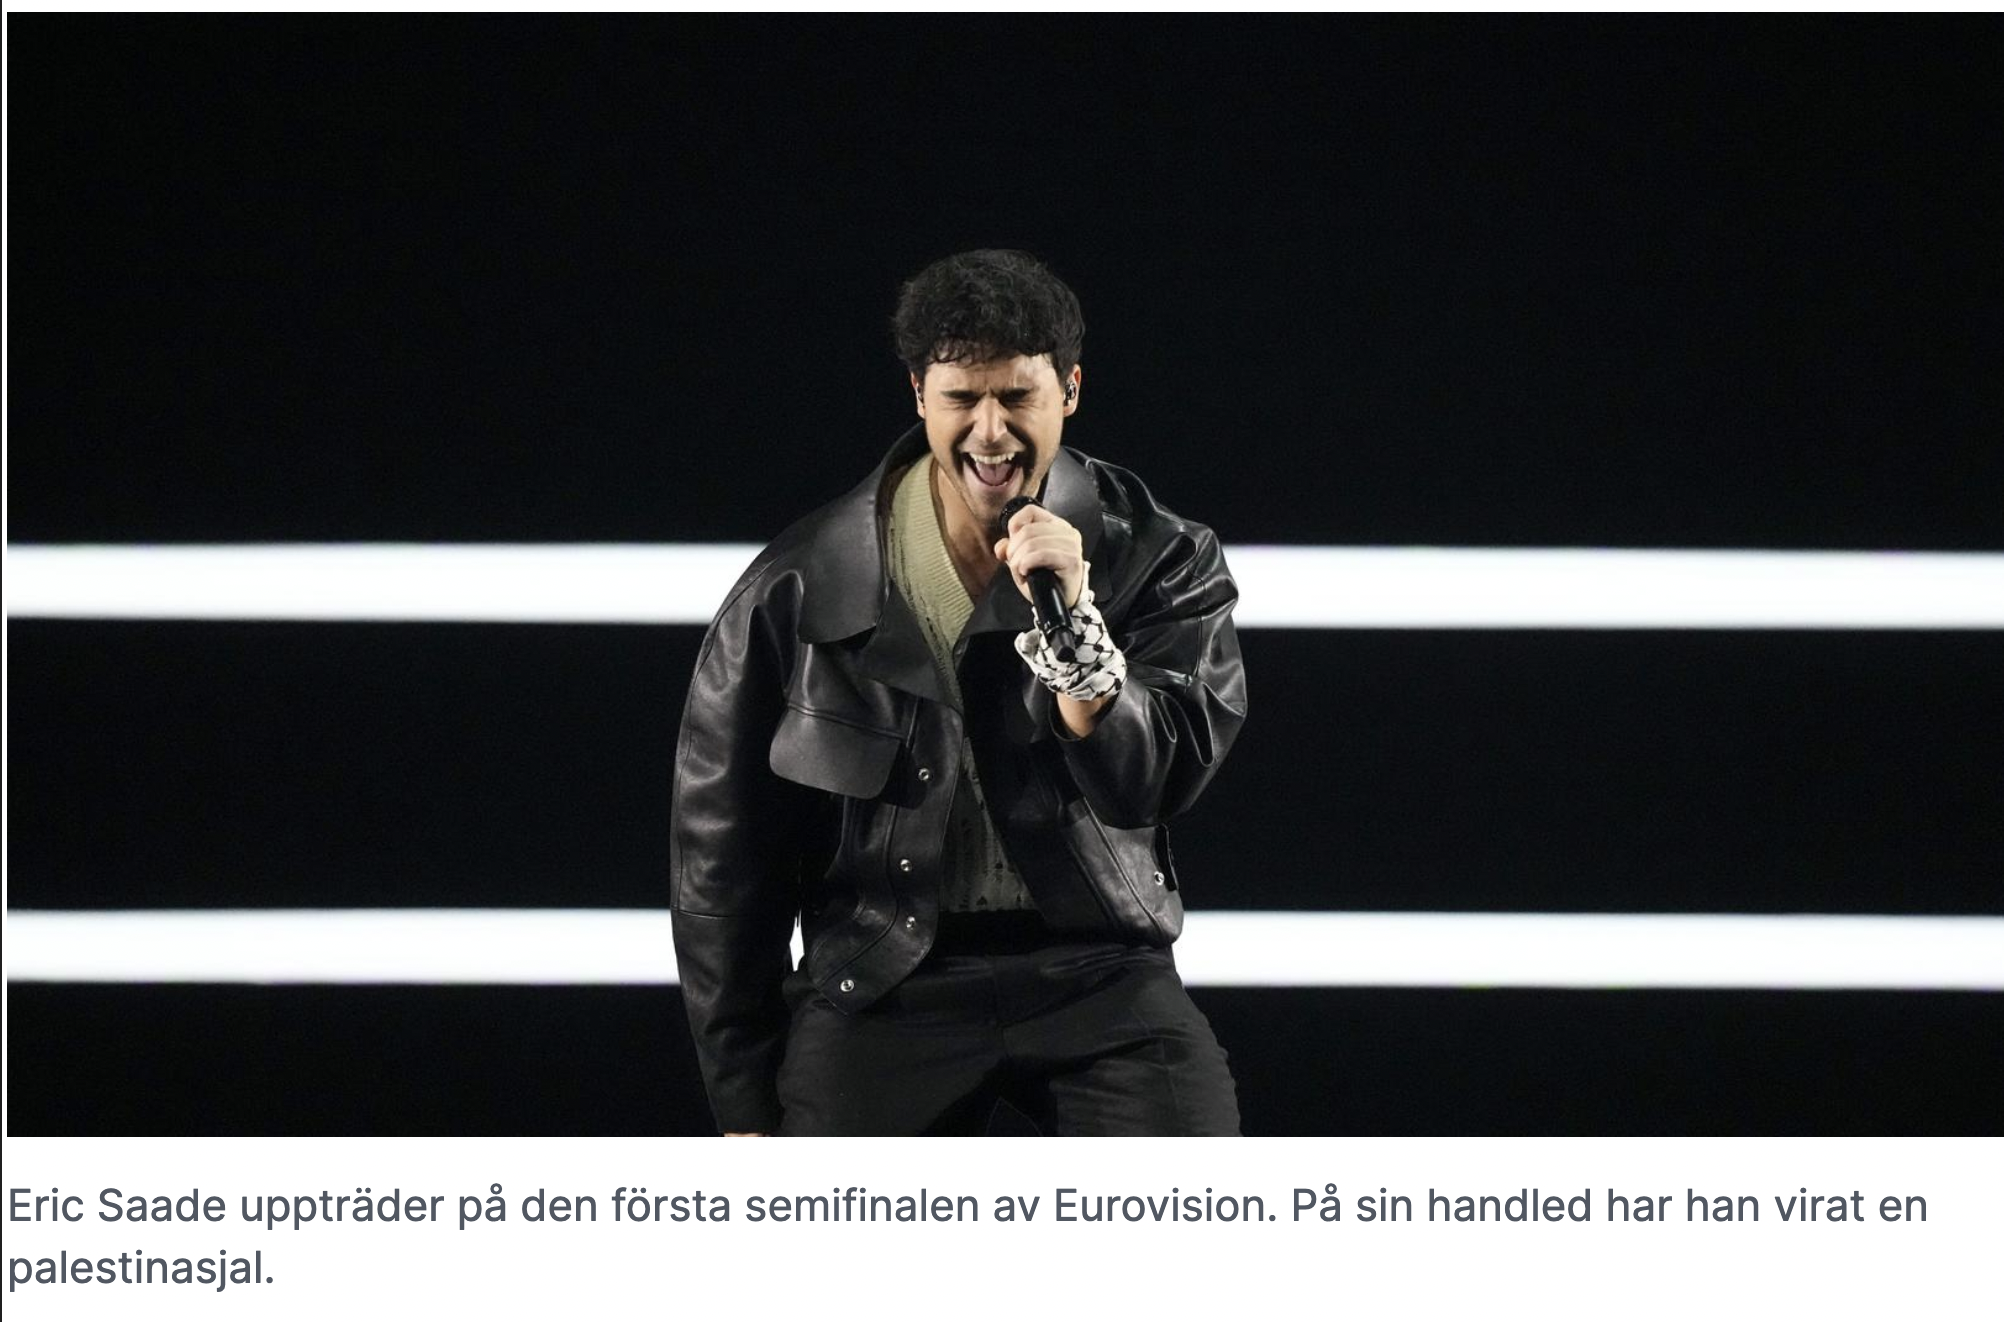 Известный в Швеции певец выступил на открытии Евровидения с палестинской шалью на руке